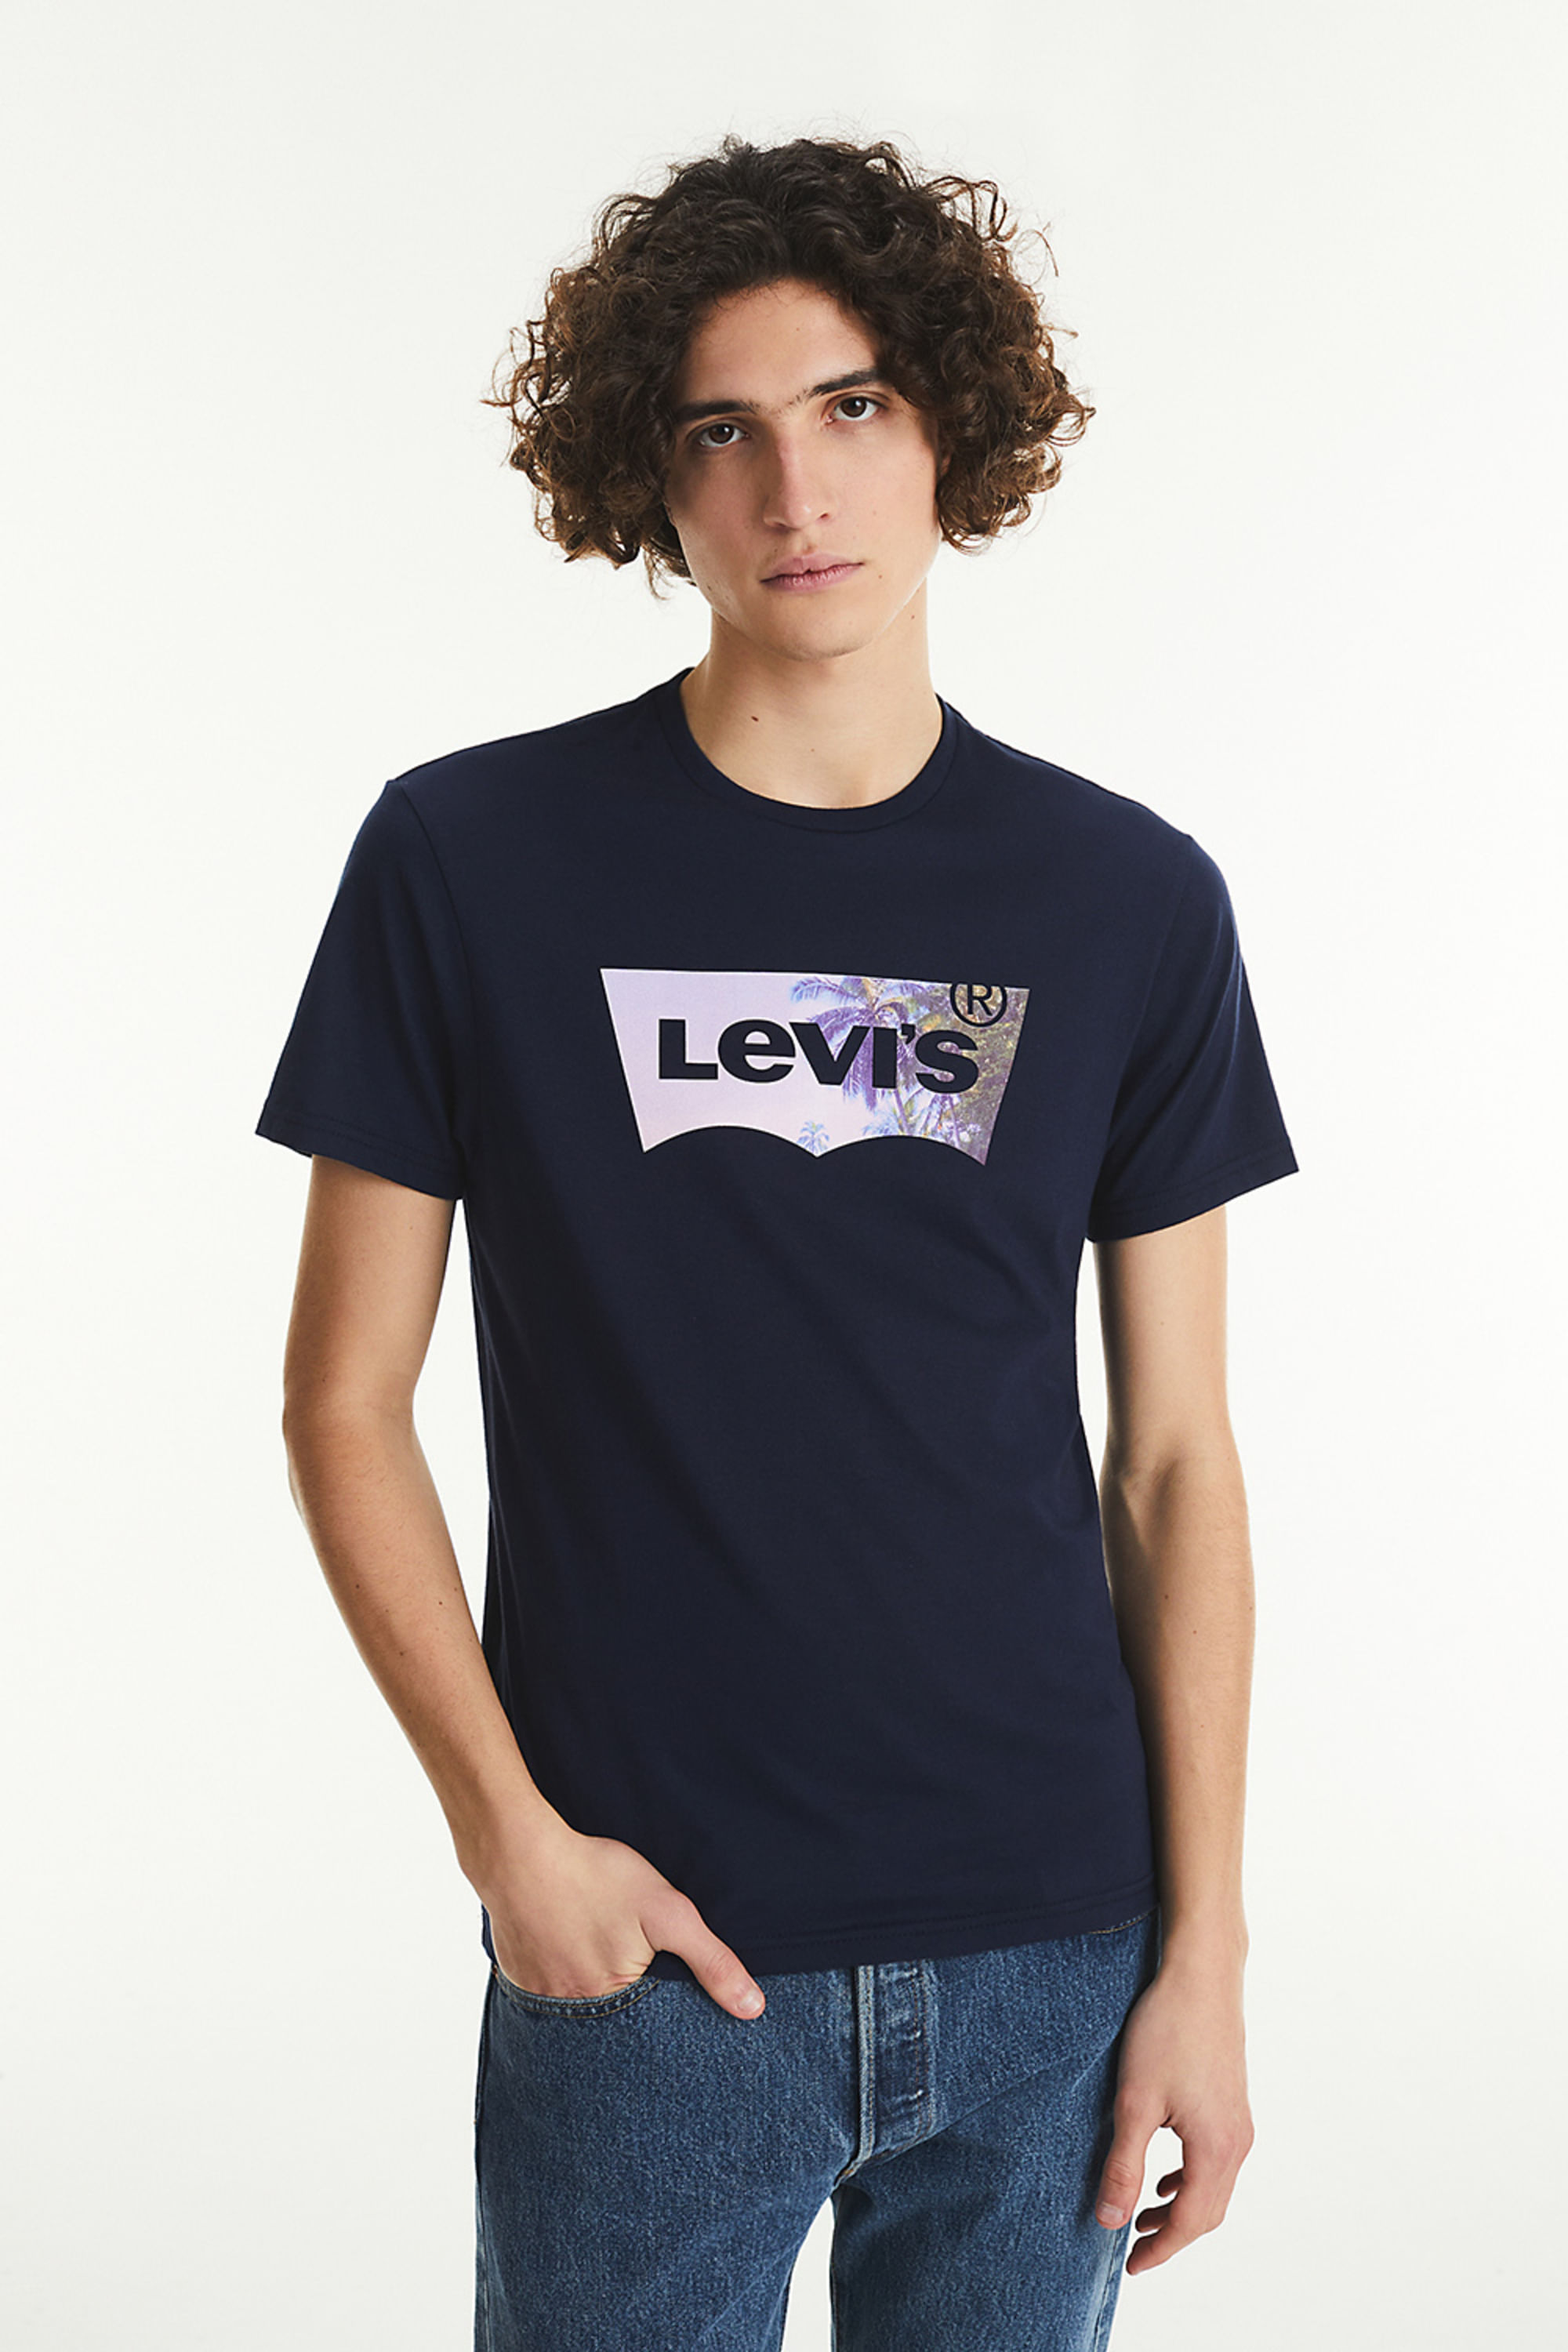 Levi's Argentina